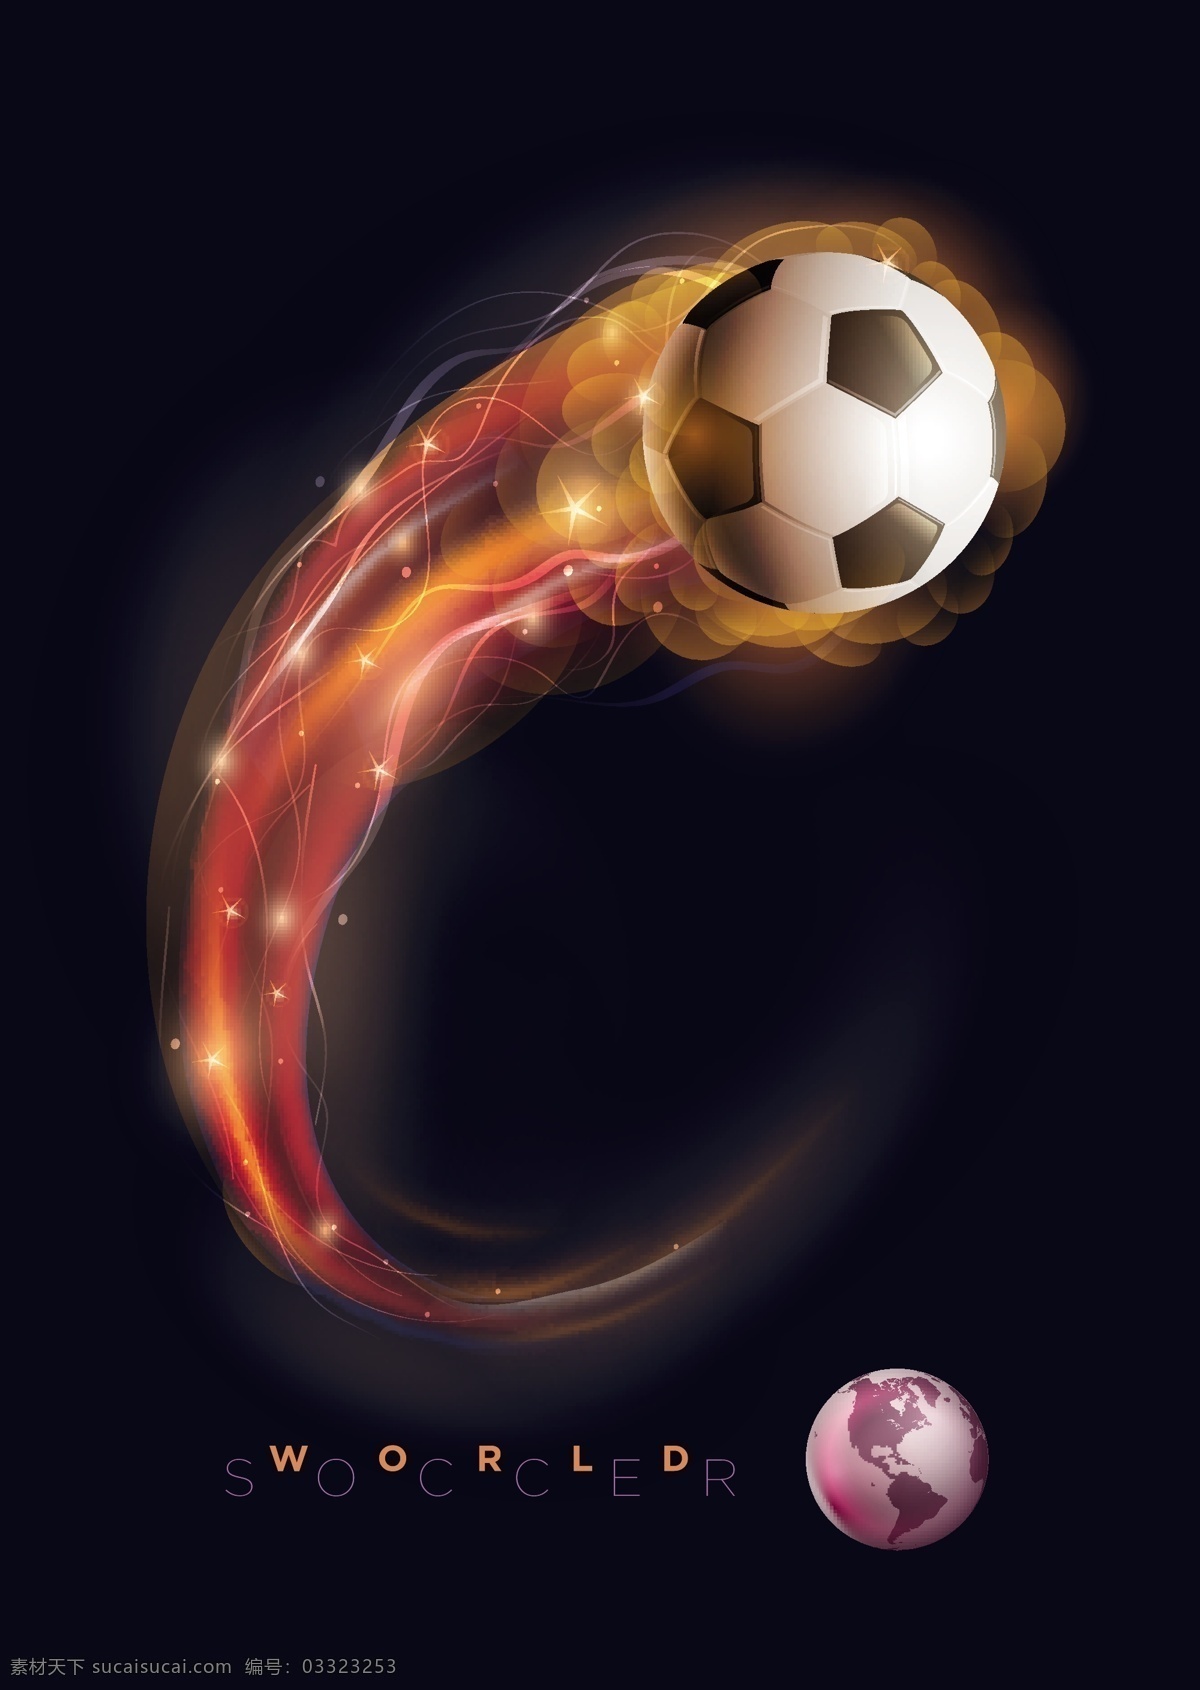 光效 火焰 足球 背景 矢量 燃烧 火花 星光 光晕 体育 运动 体育运动 赛事 比赛 插画 海报 画册 文化艺术